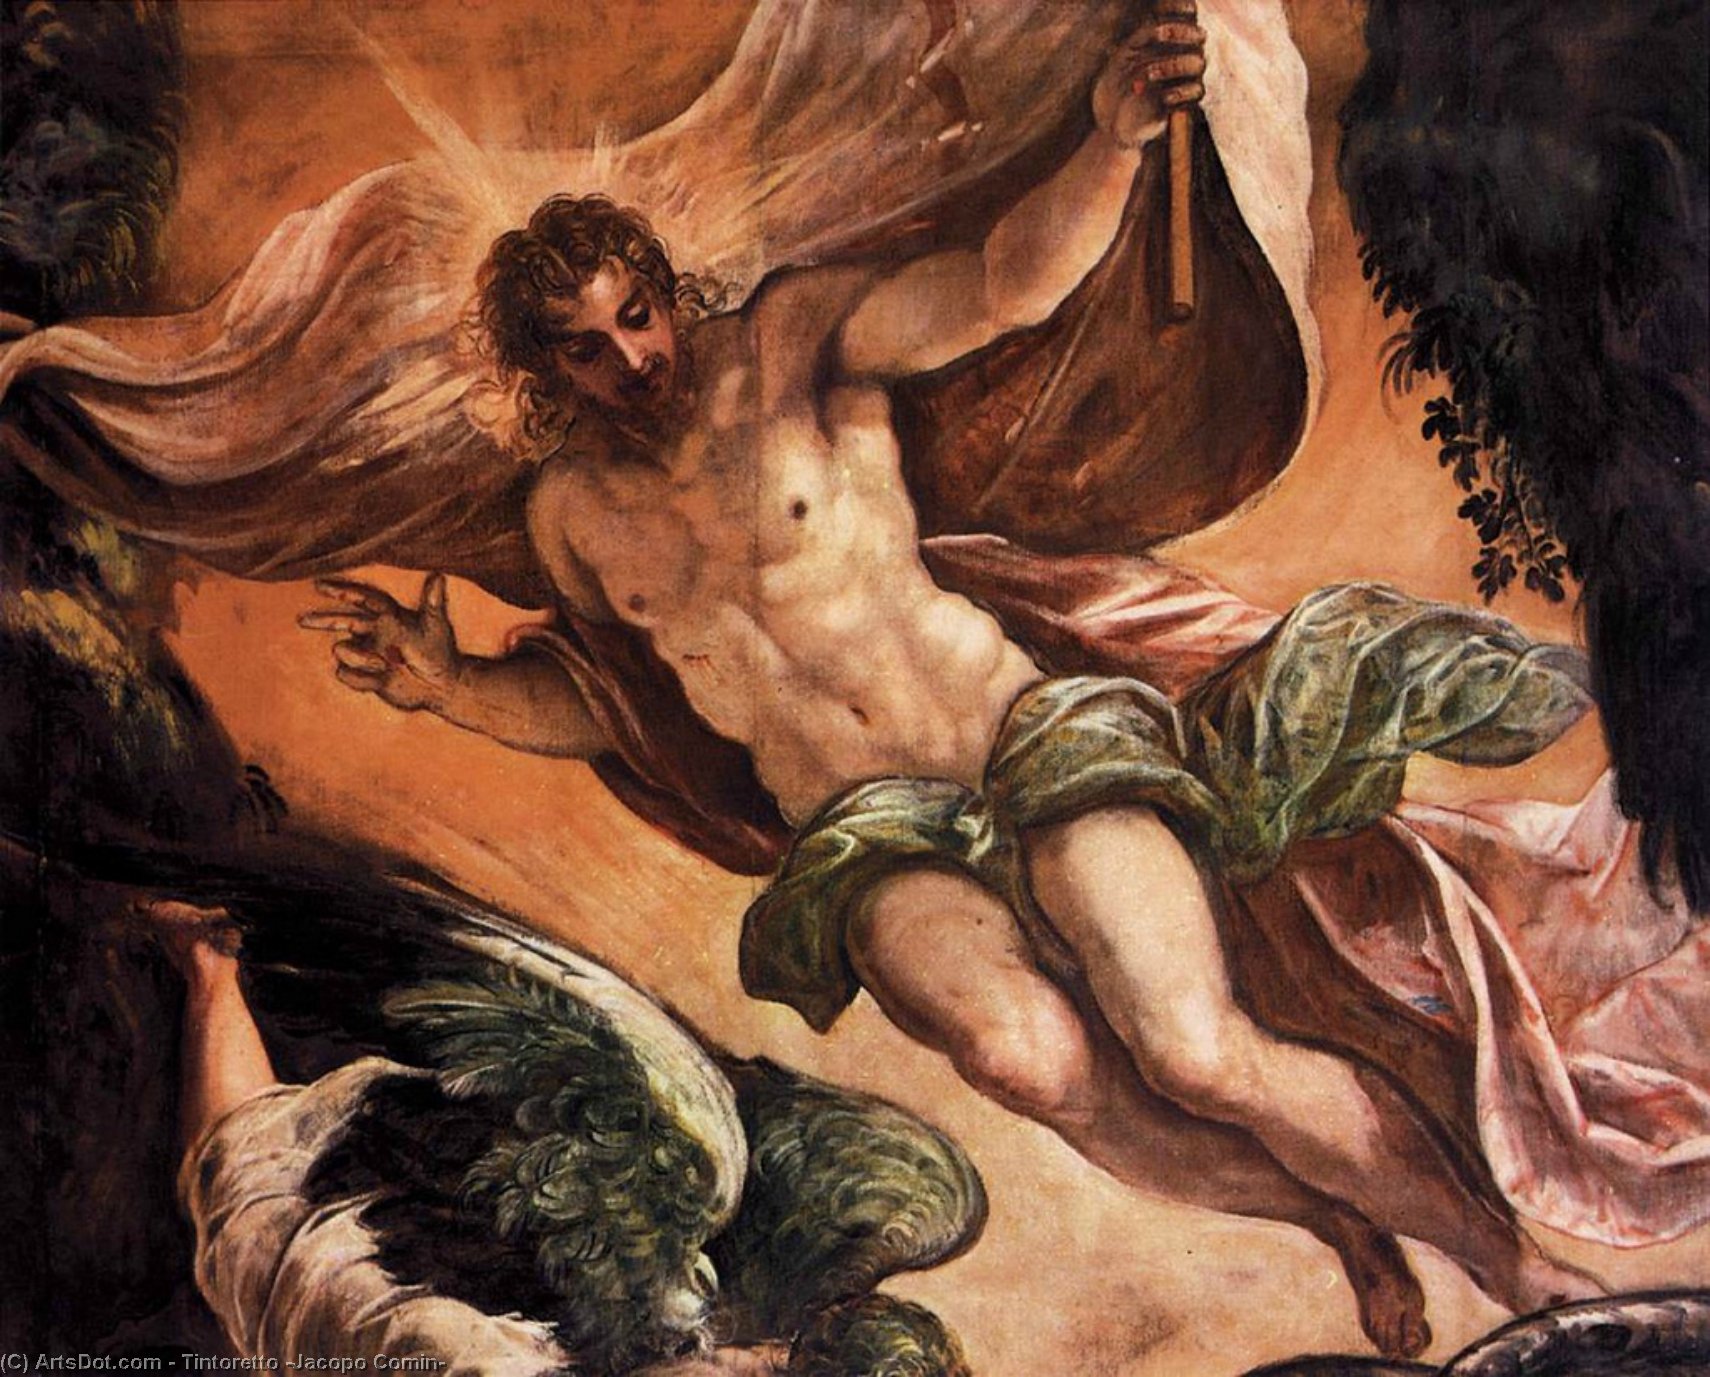 Compre Museu De Reproduções De Arte A Ressurreição de Cristo (detalhes), 1579 por Tintoretto (Jacopo Comin) (1518-1594, Italy) | ArtsDot.com